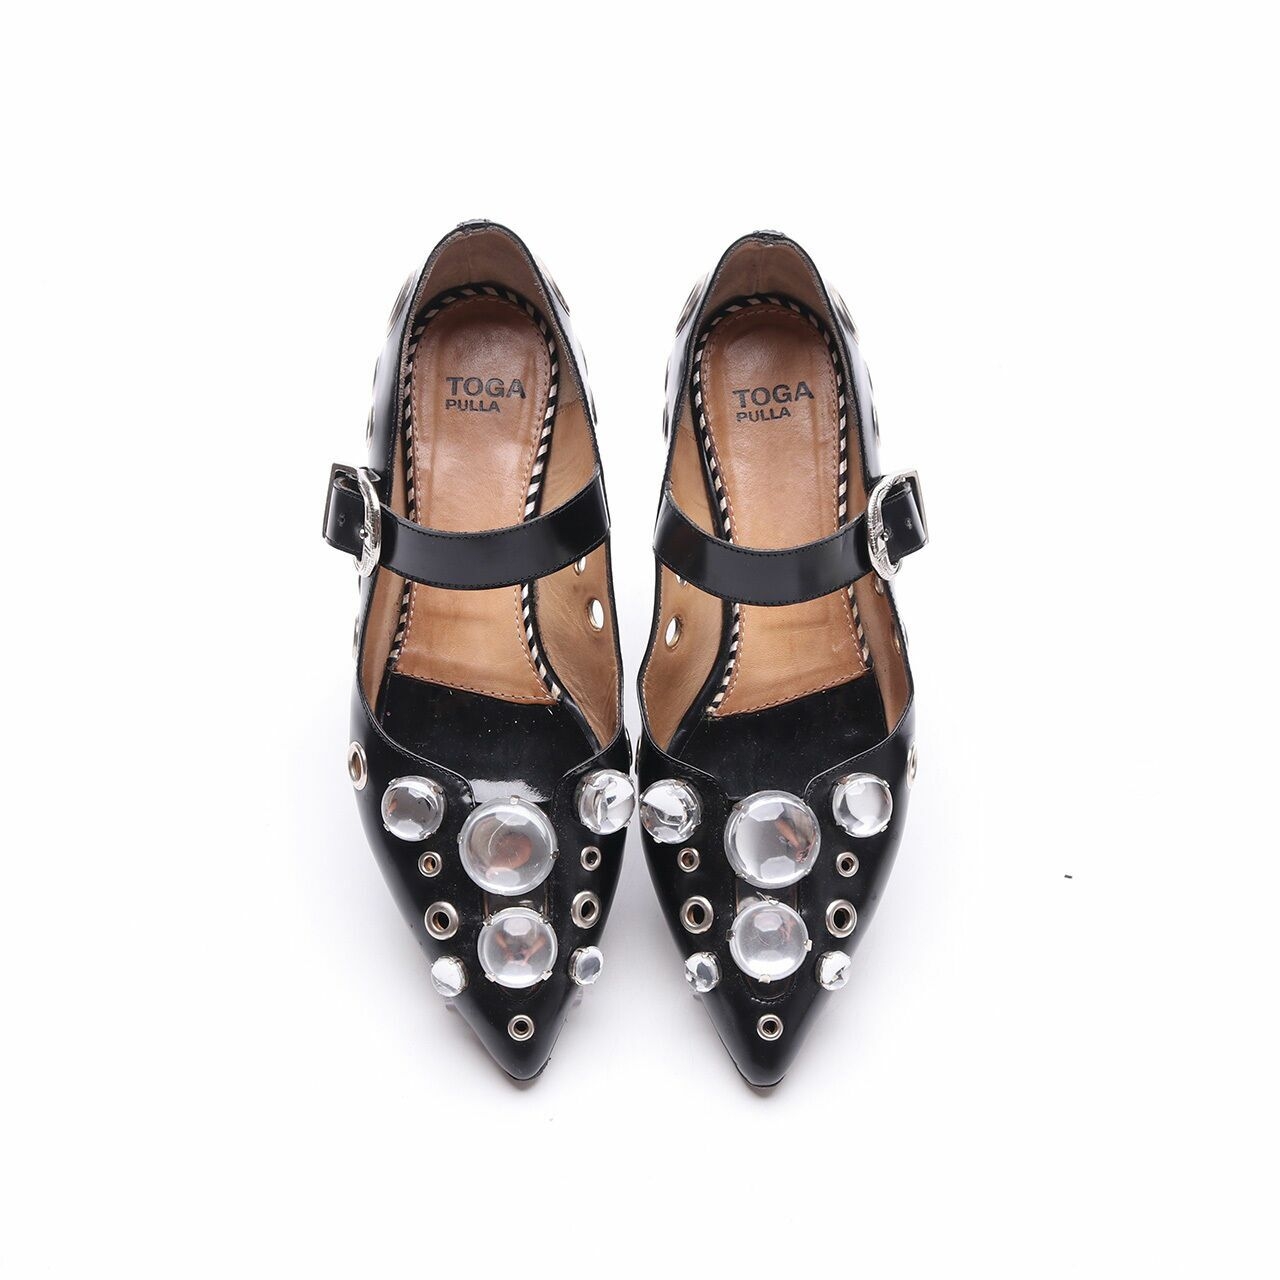 Toga Pulla Embellished Ballerina Black Flats Shoes